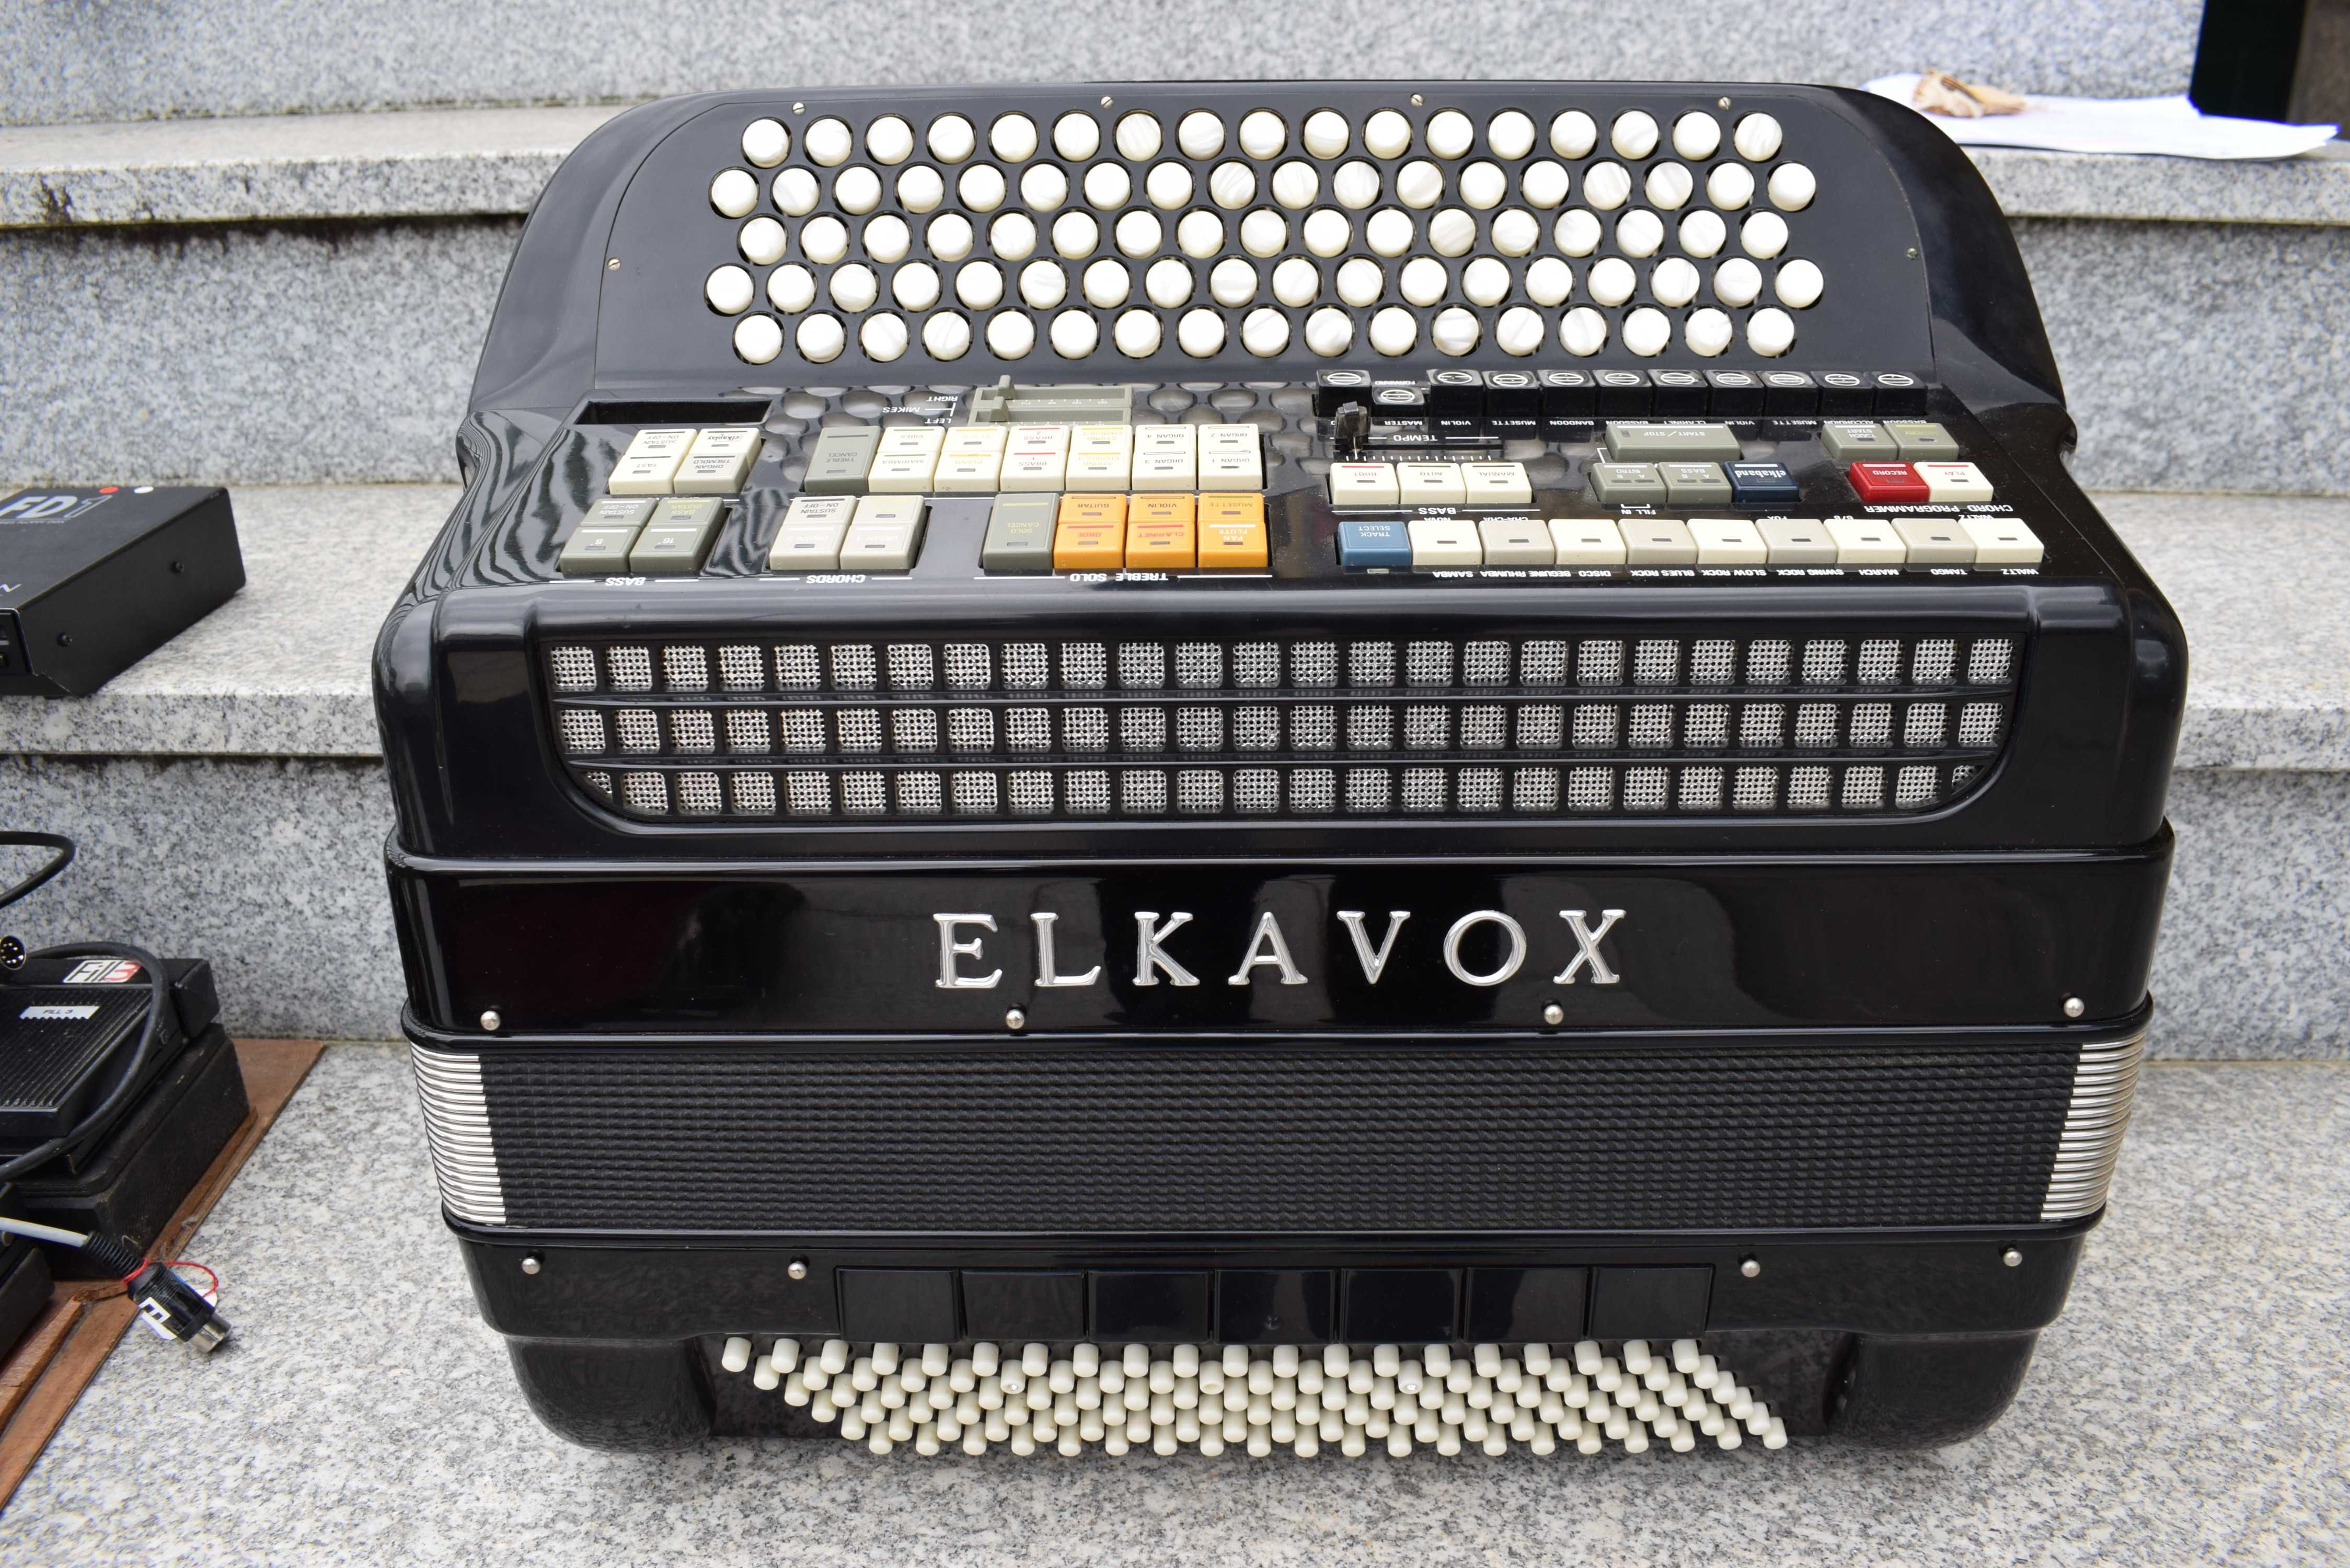 Acordeao Elkavox 4 Voz Com Sistema Midi,